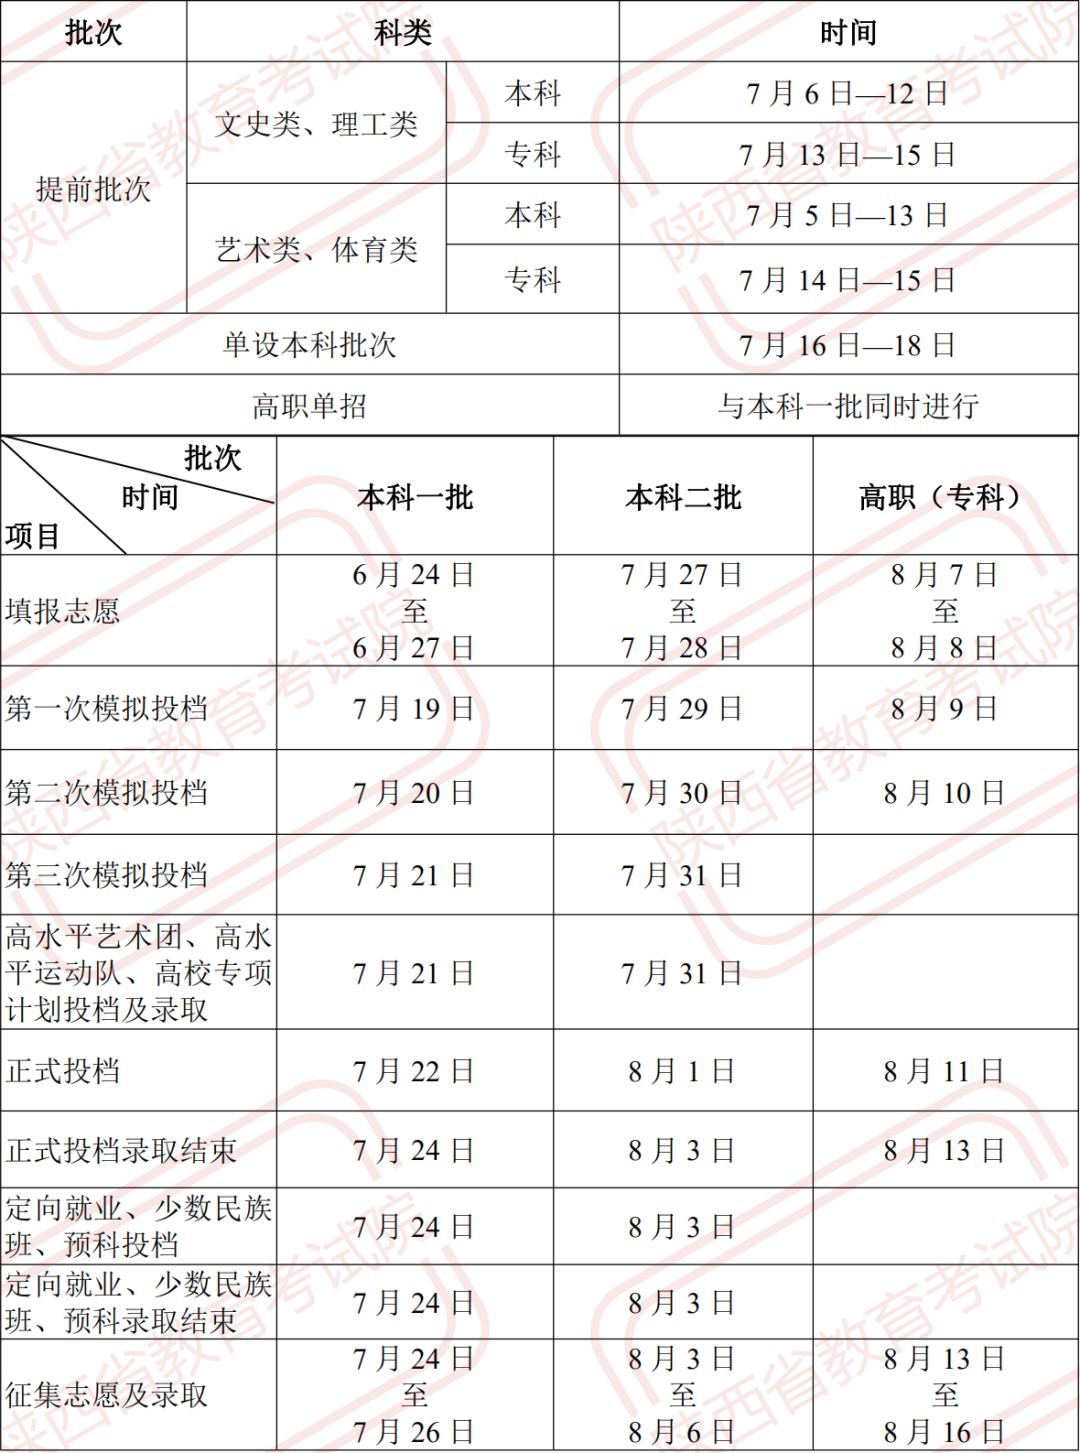 2021年陕西省高考各批次录取工作的具体时间安排